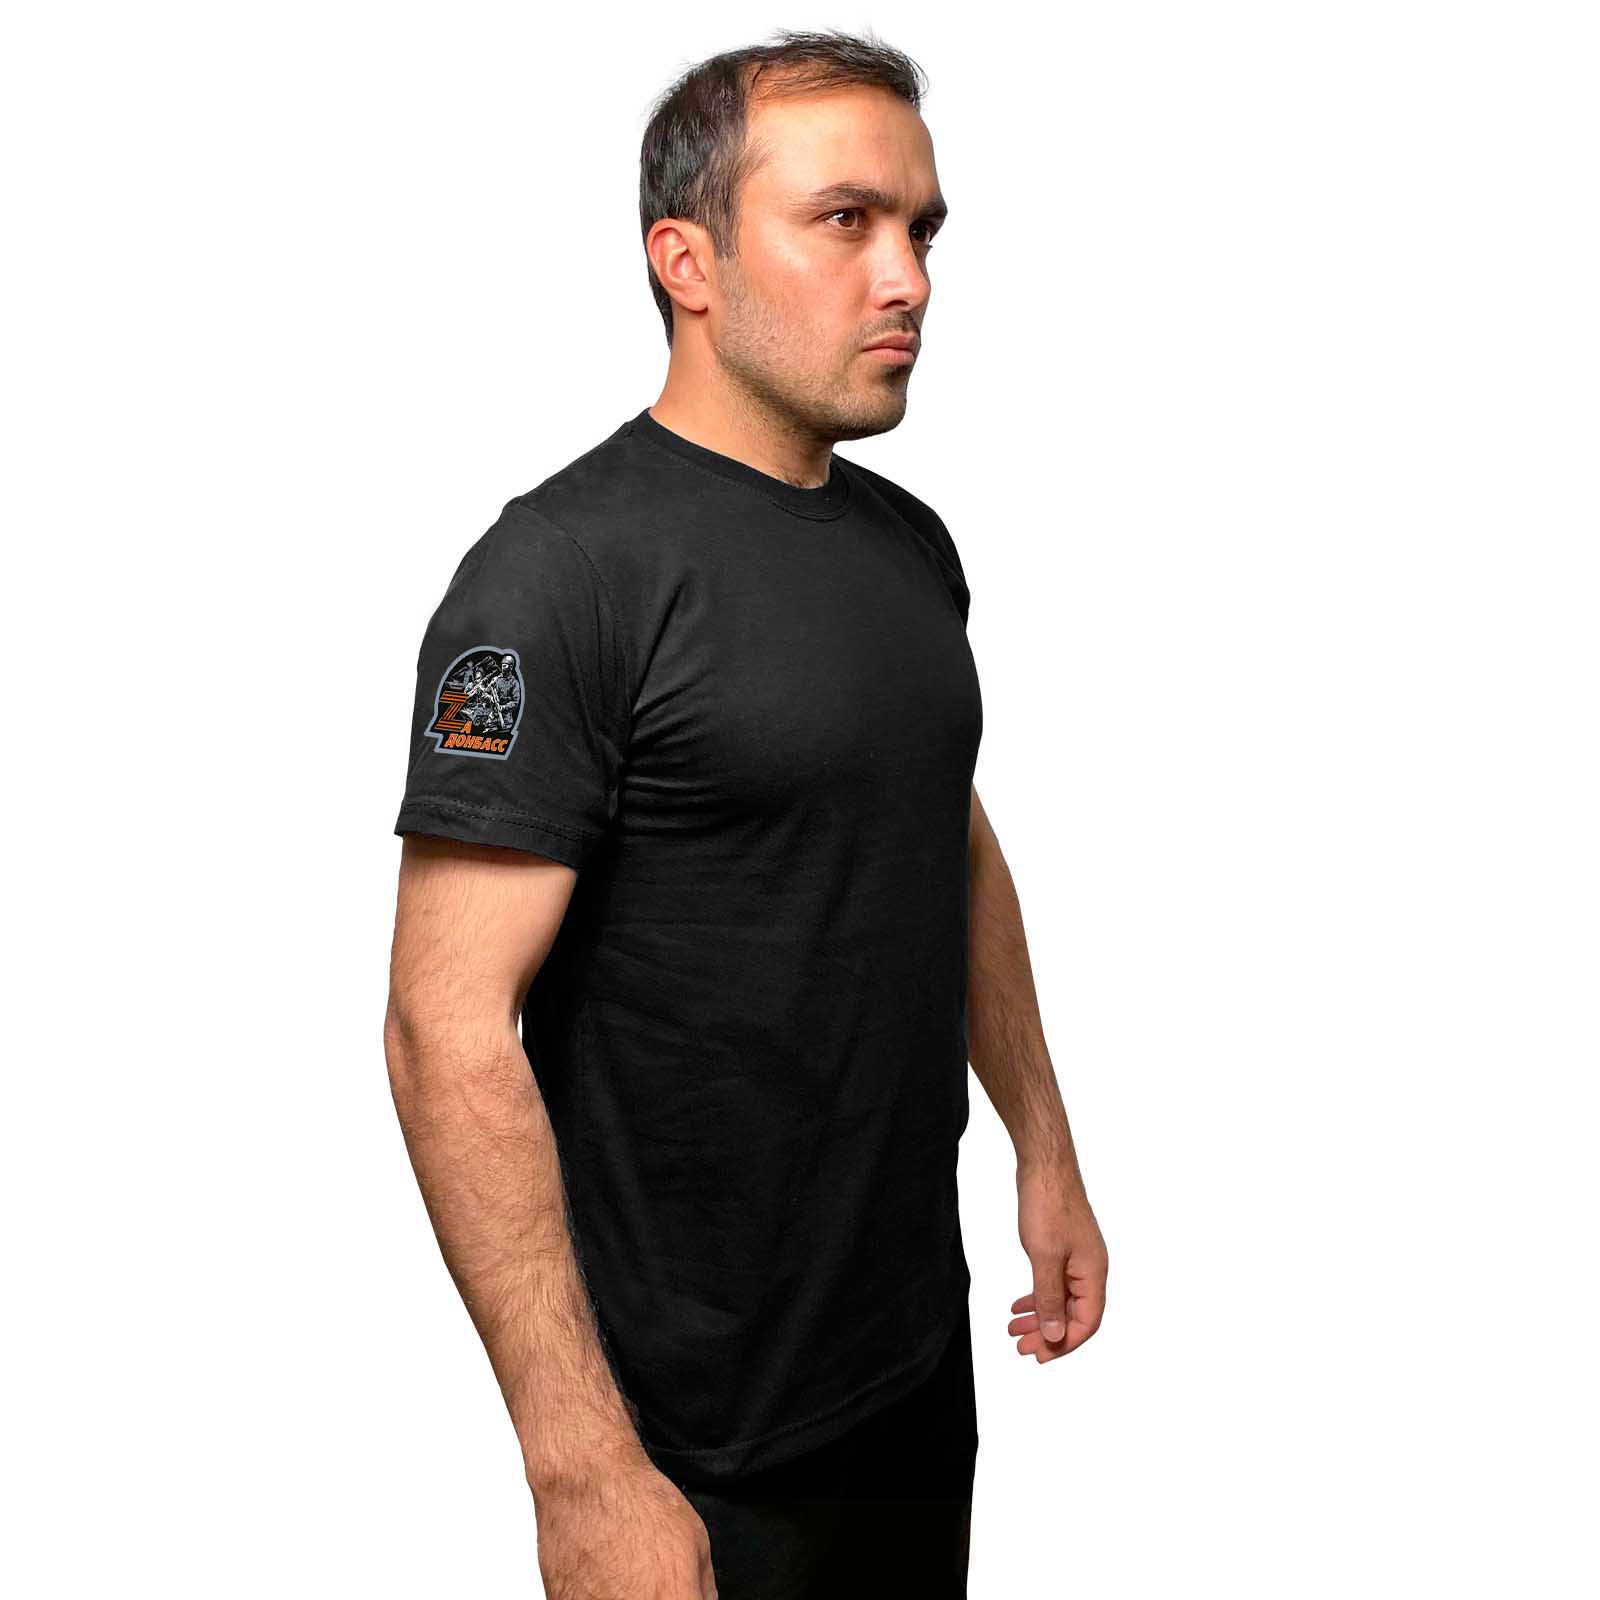 Чёрная футболка с термопереводкой "Zа Донбасс" на рукаве